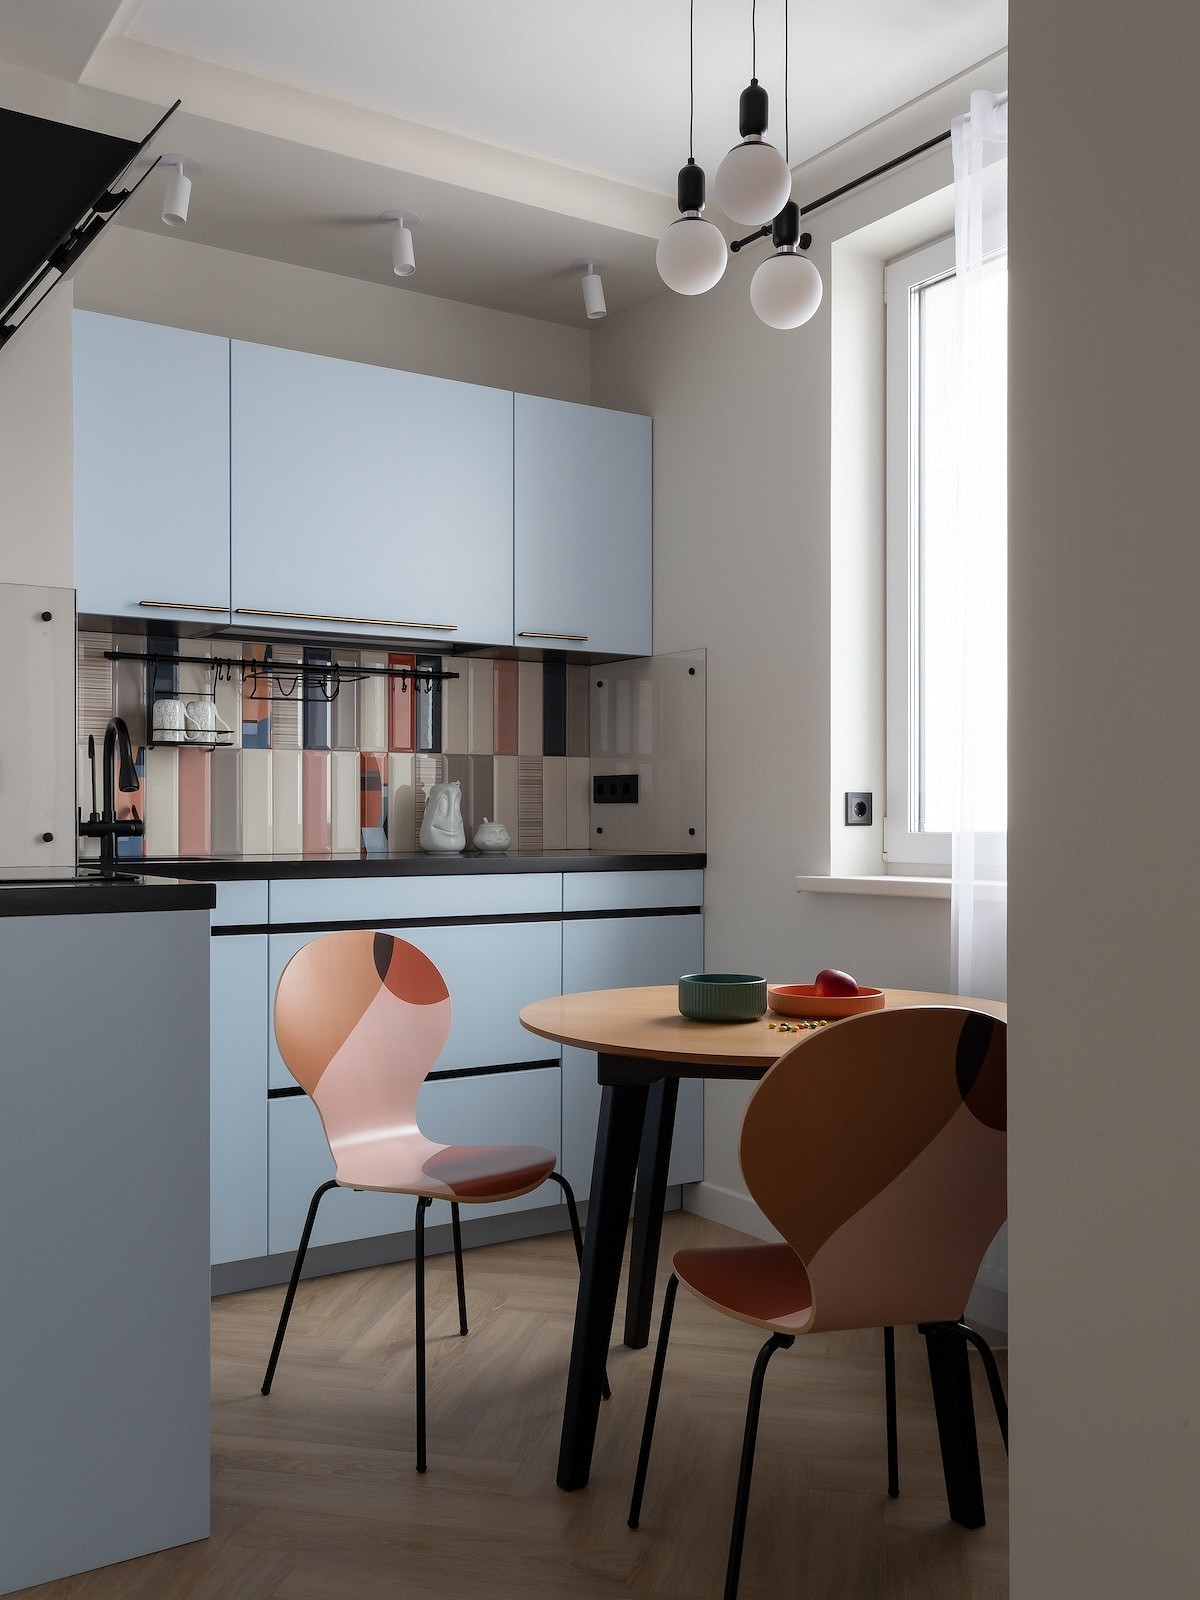 Интерьер для молодоженов: как дизайнер оформила первую квартиру 43 кв. м для семьи13